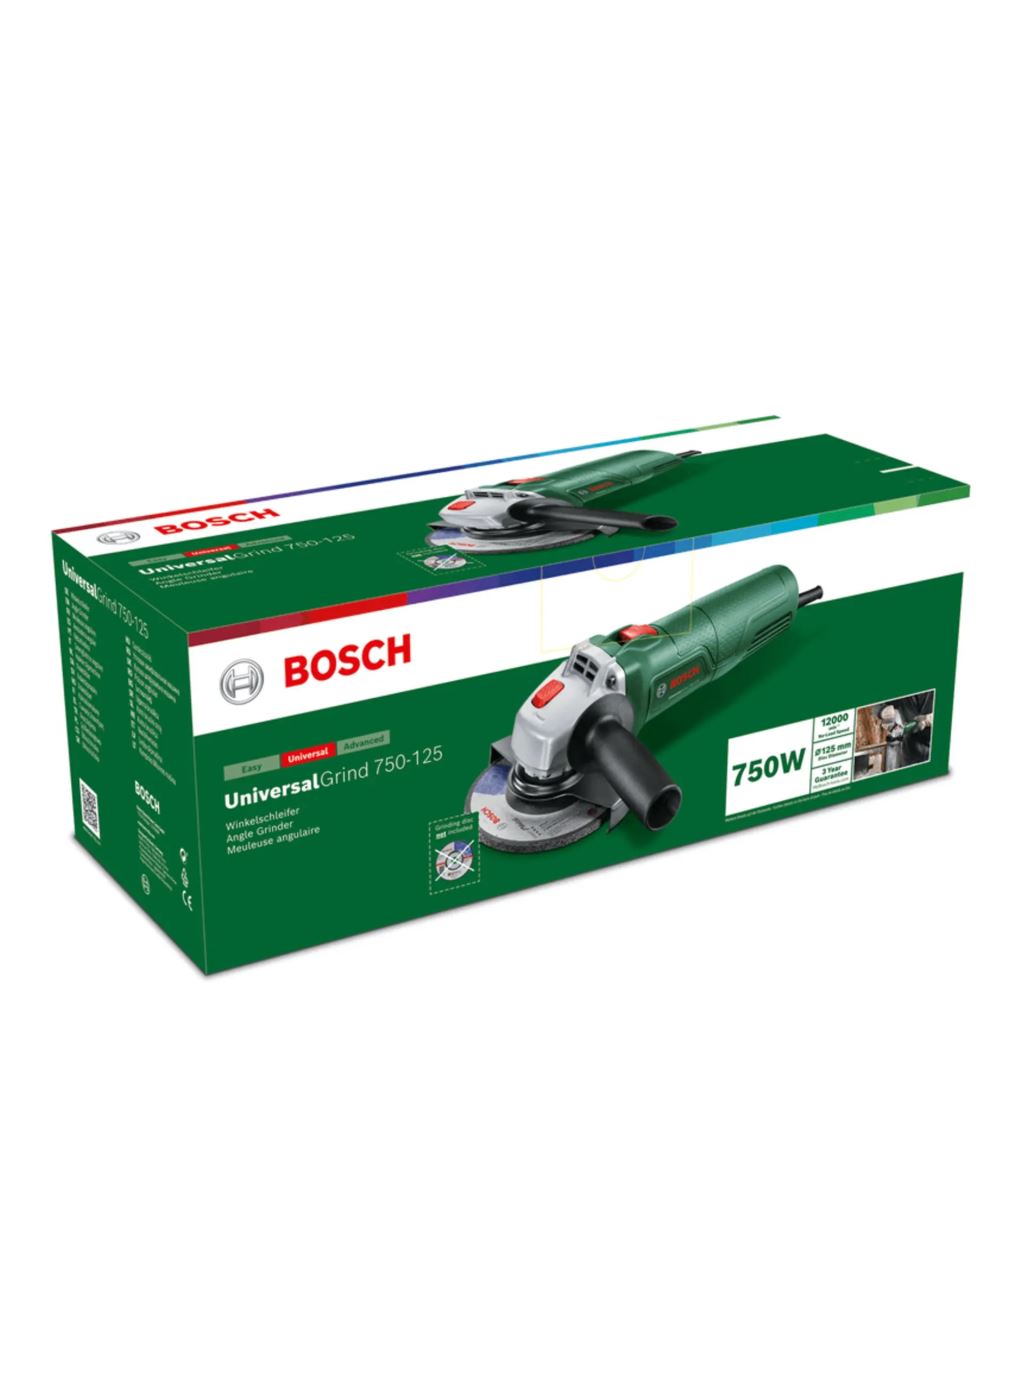 Bosch UniversalGrind 750-125 sarokcsiszoló (06033E2001)